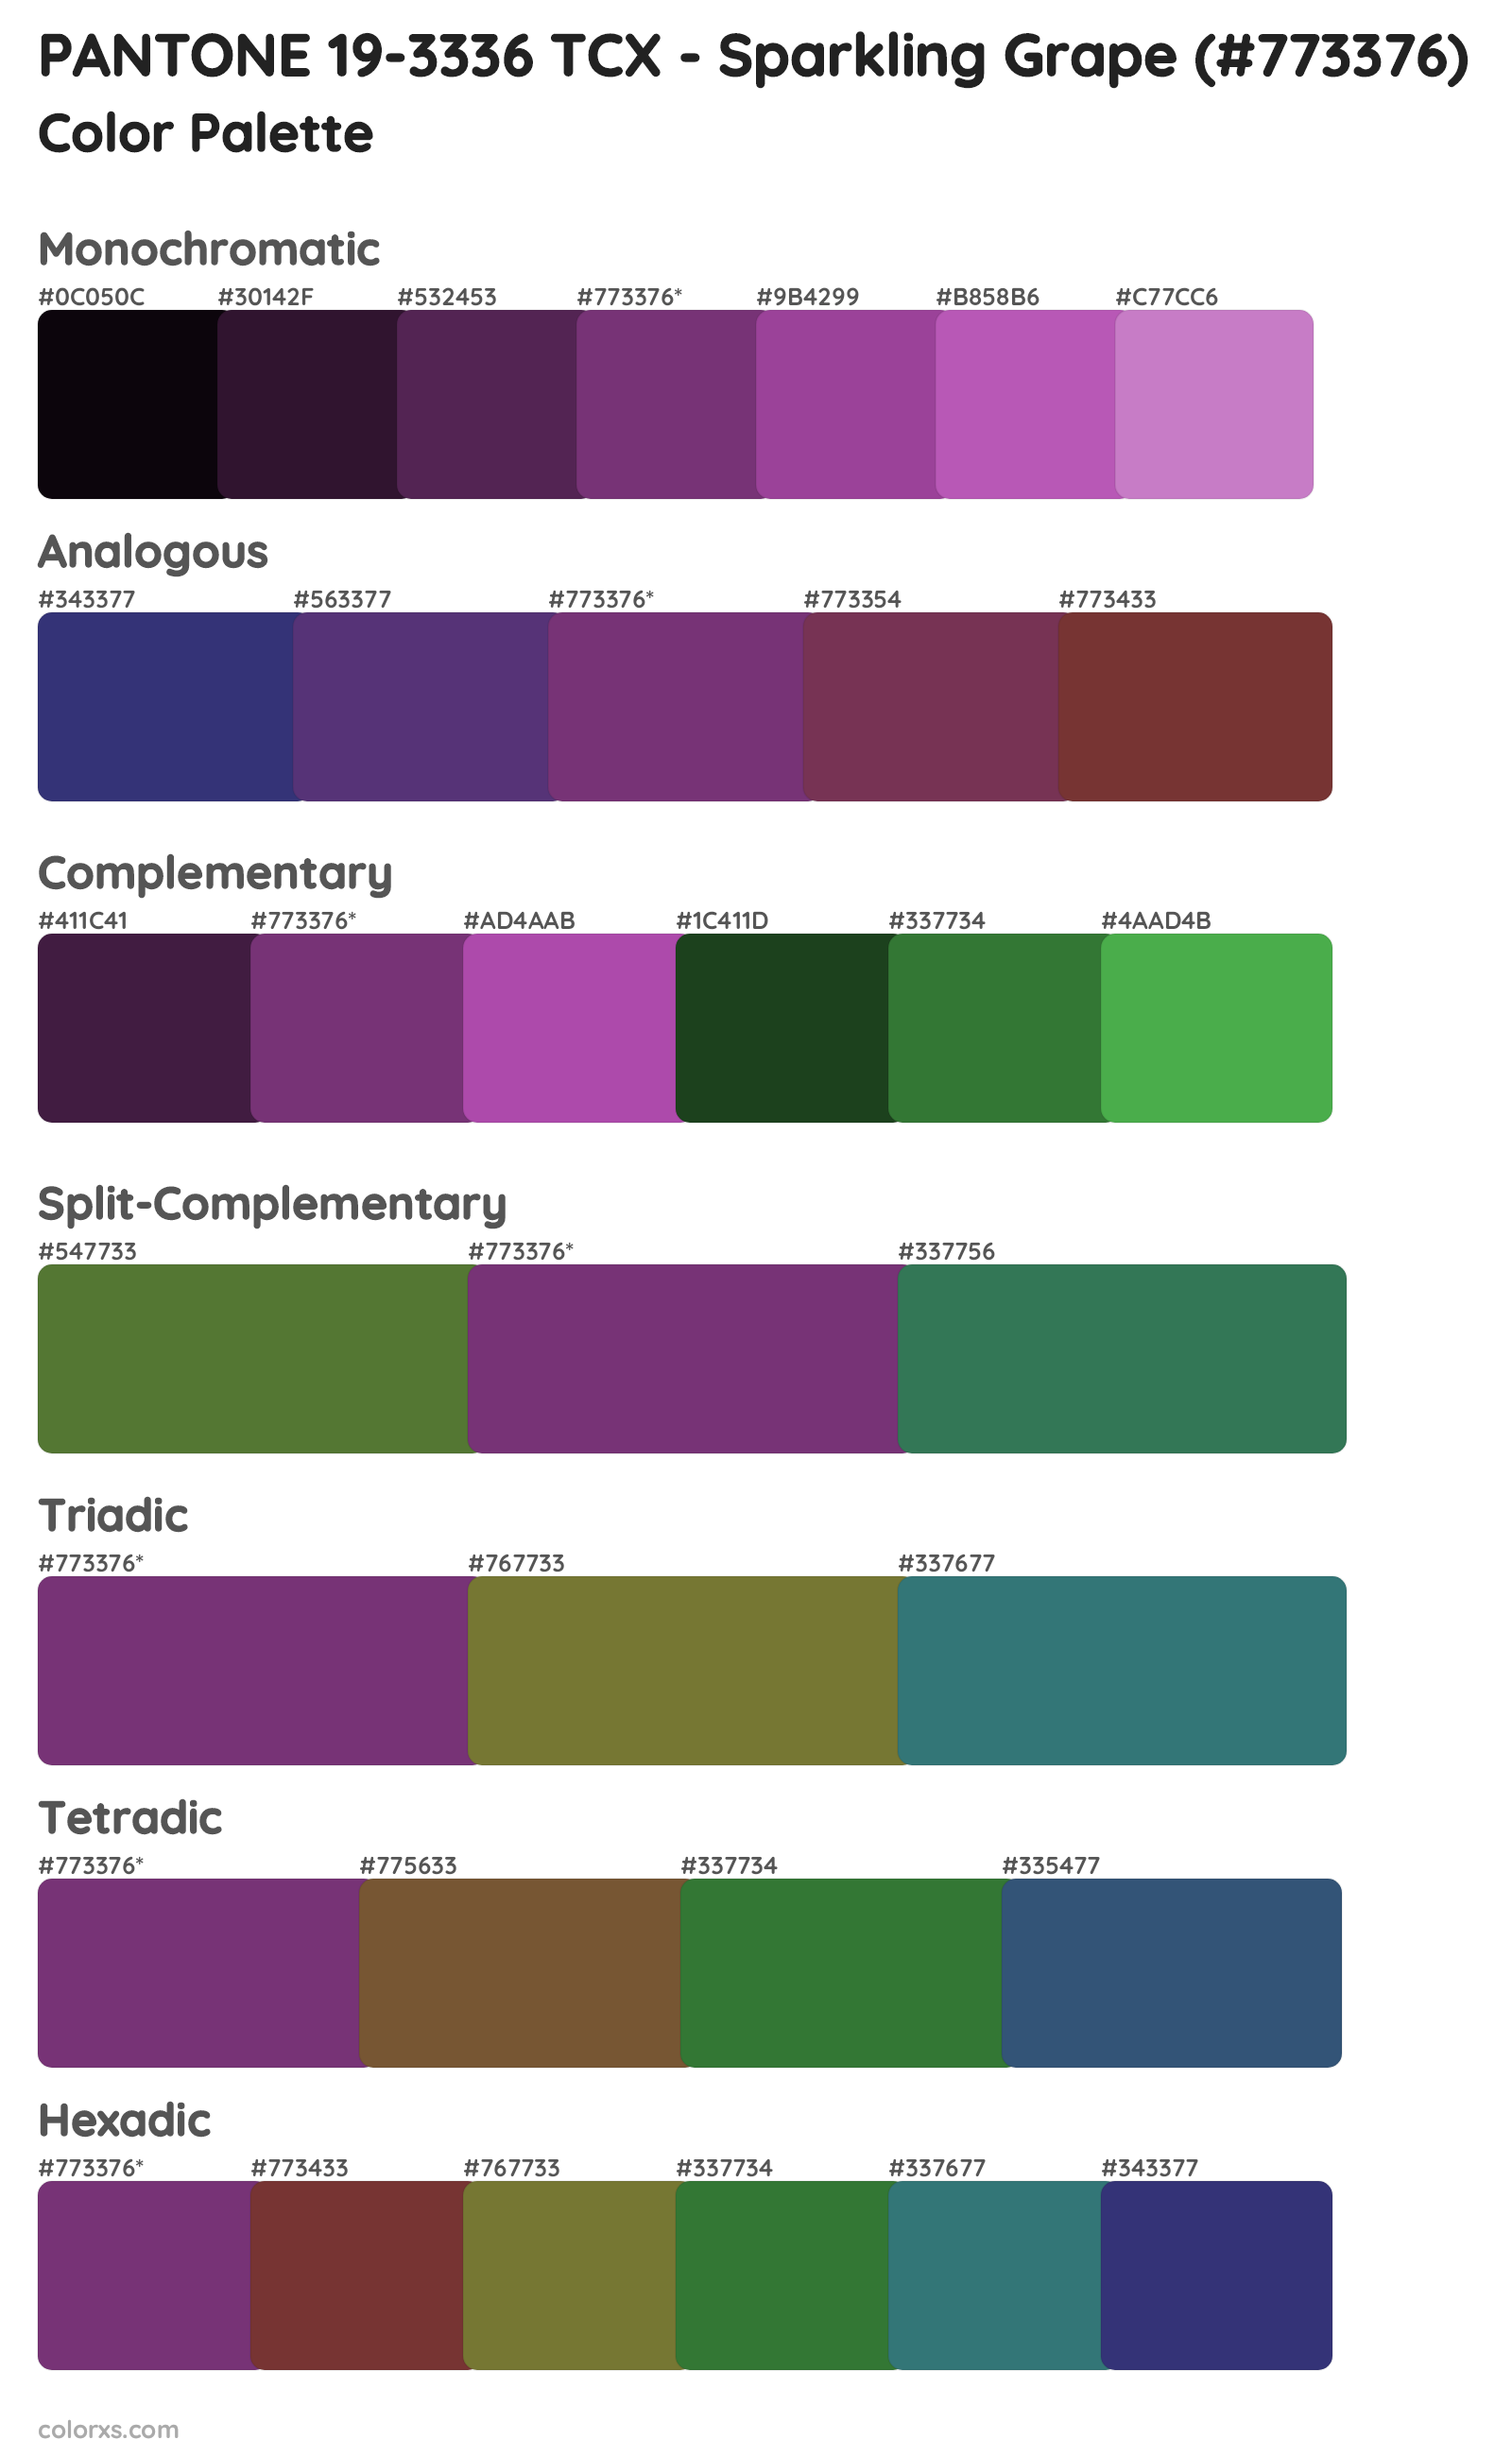 PANTONE 19-3336 TCX - Sparkling Grape Color Scheme Palettes